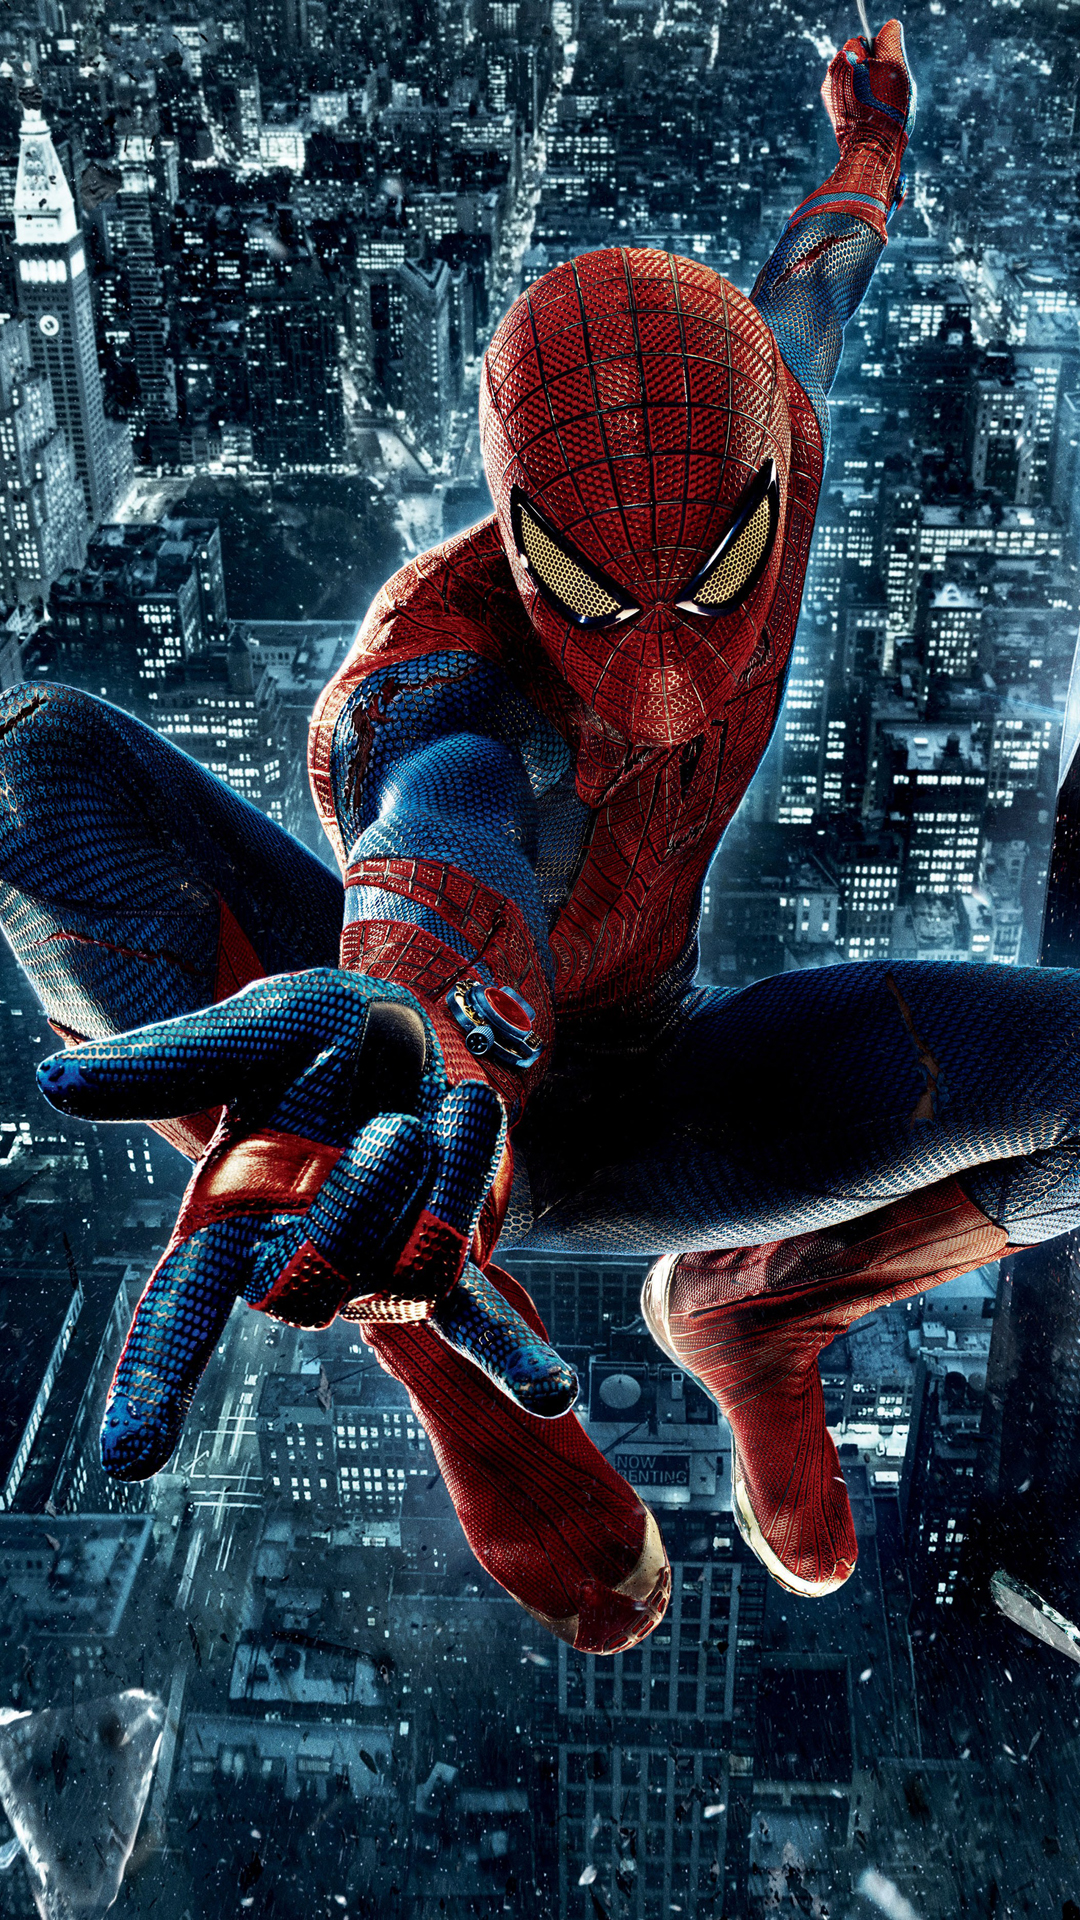 48+] Spiderman 1 Wallpaper - WallpaperSafari